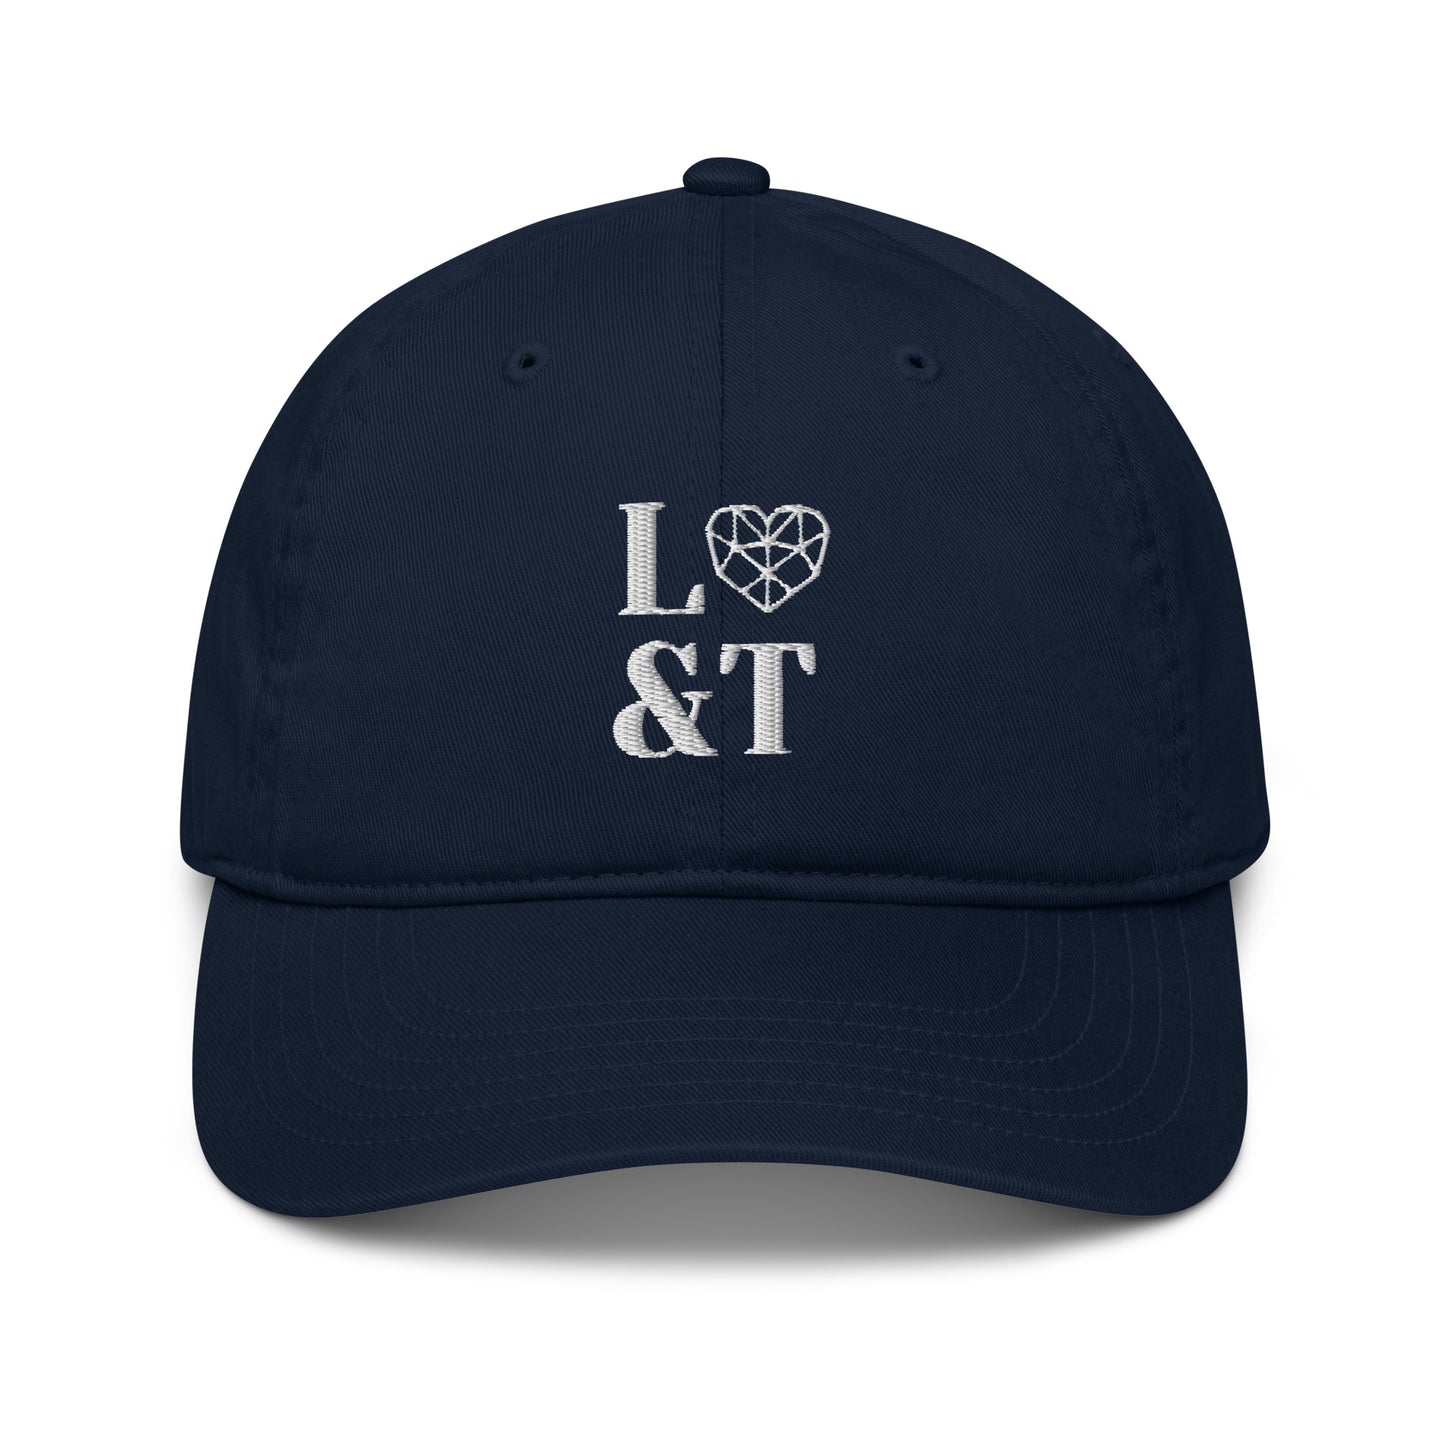 L&T Organic Dad Hat